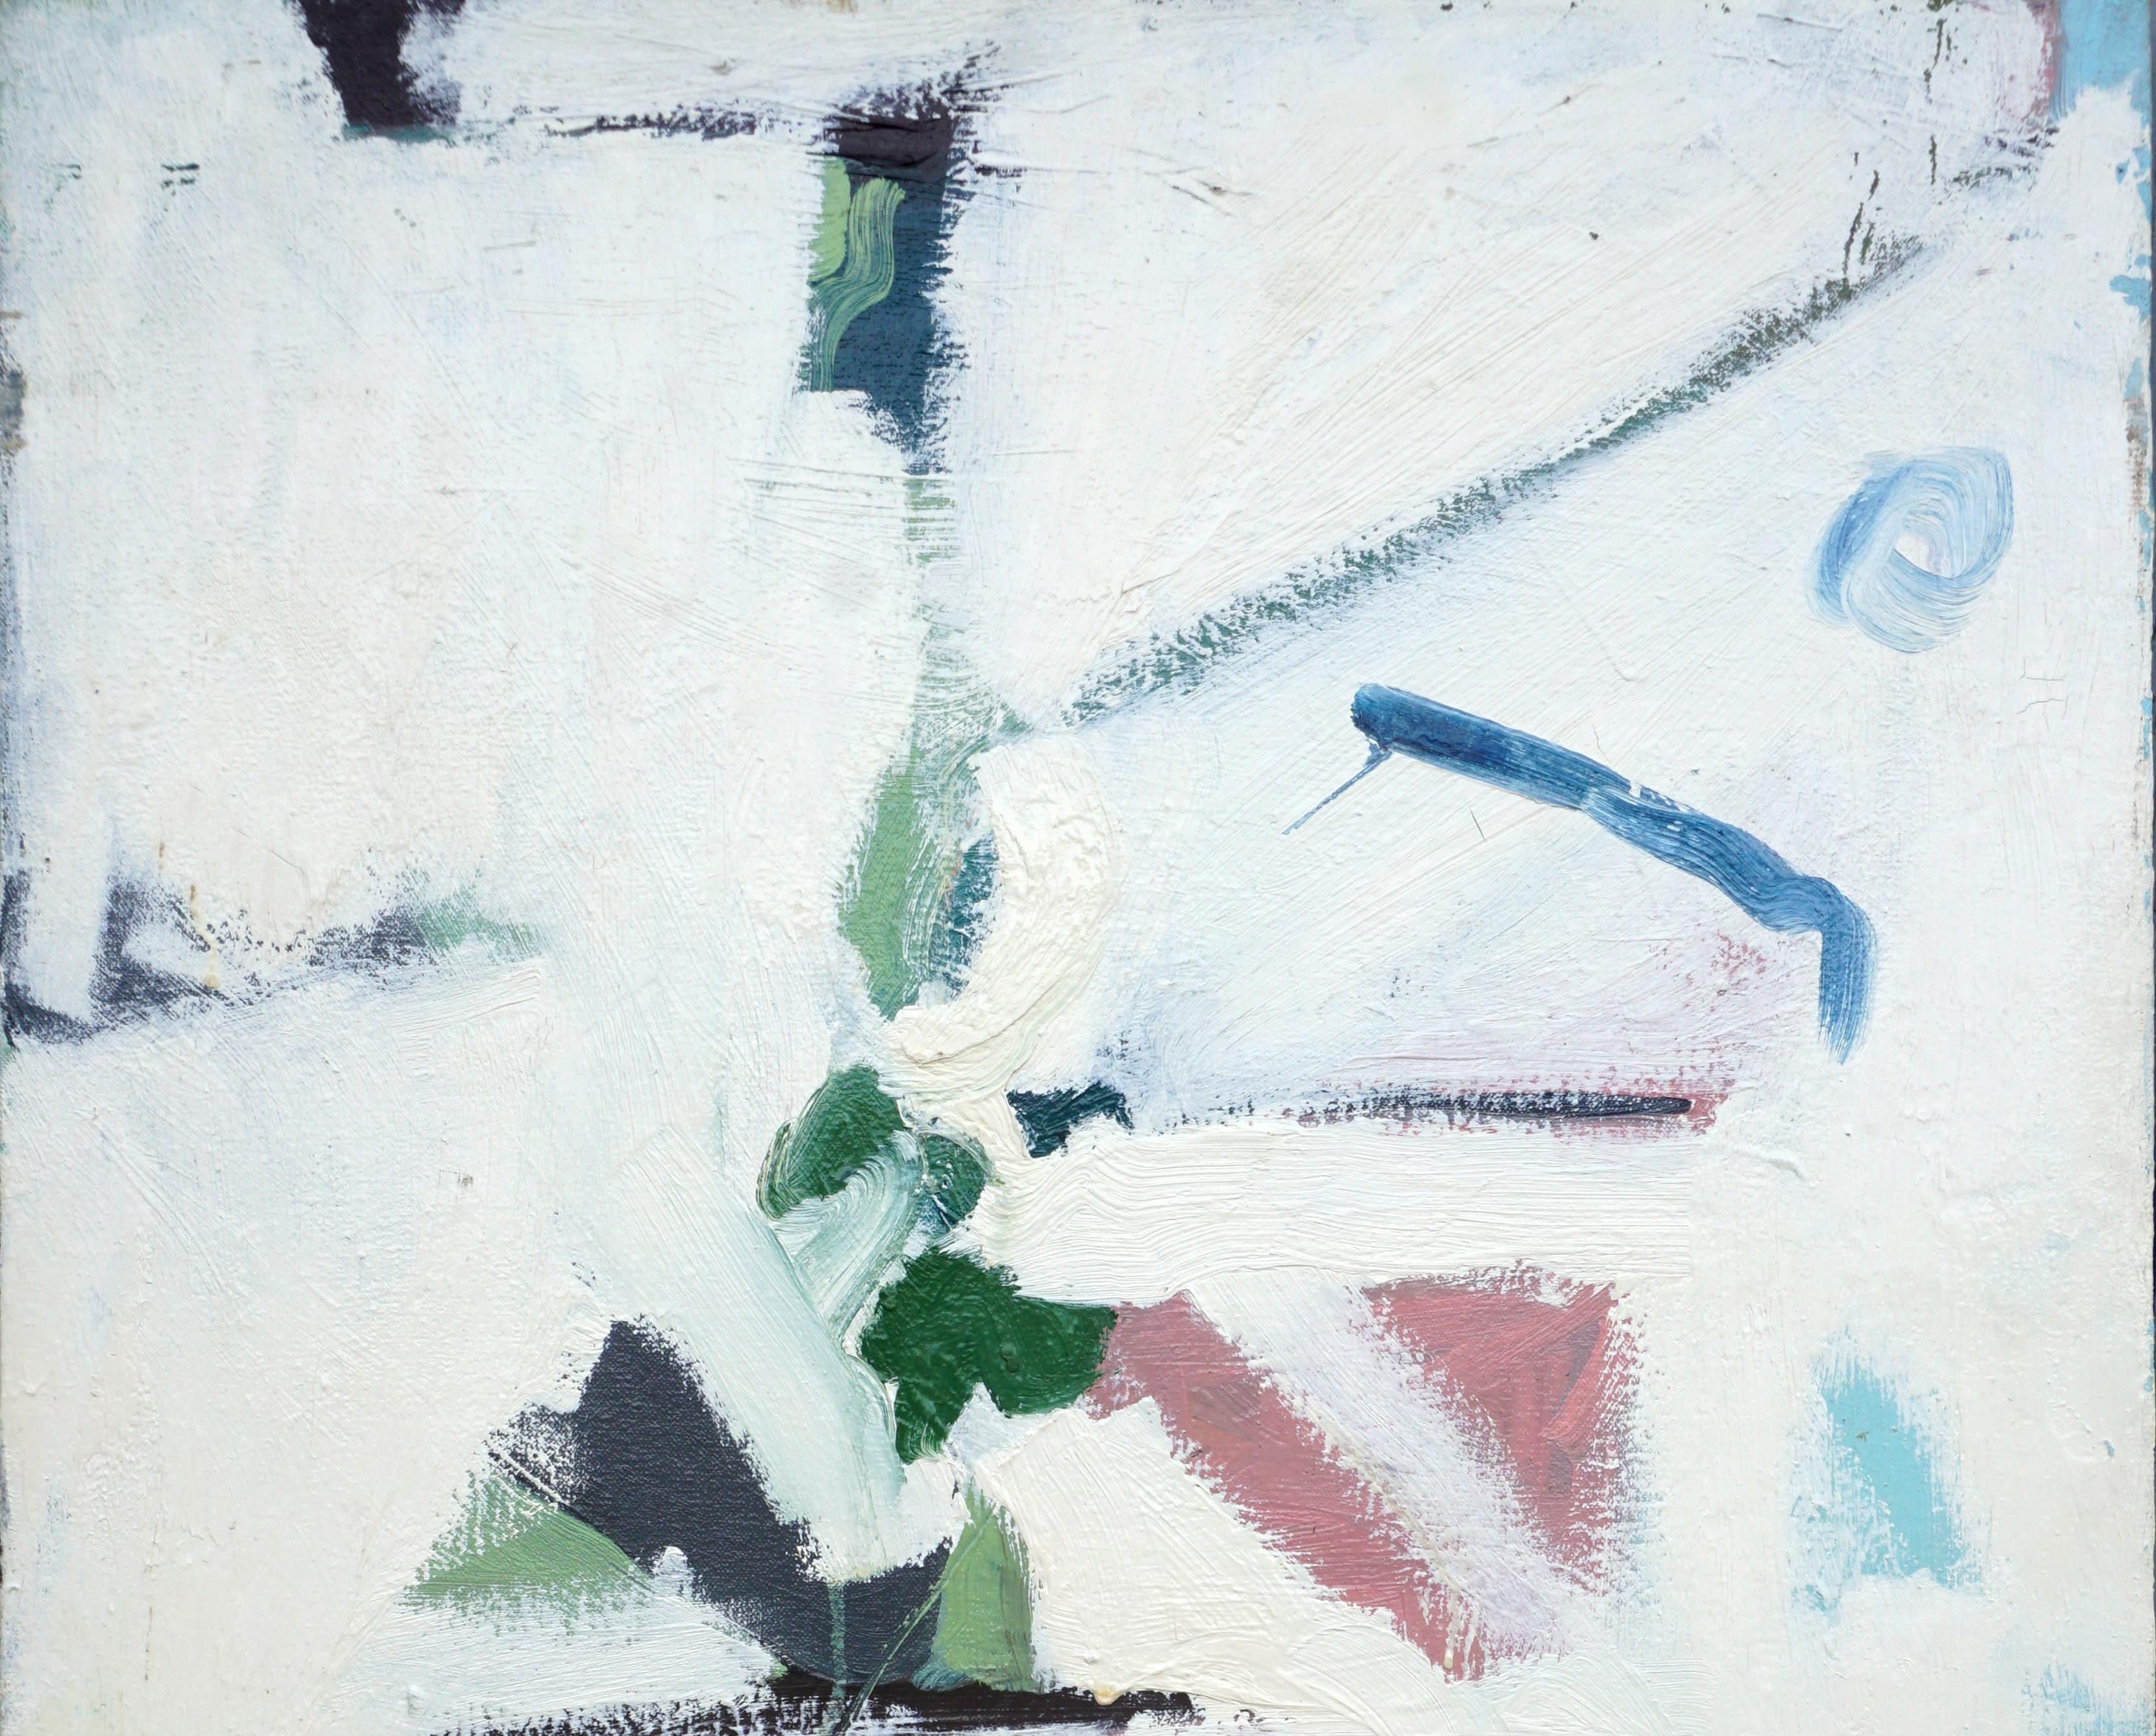 Baldwin d'été 1976 - Expressionnisme abstrait Painting par Michael Pauker 